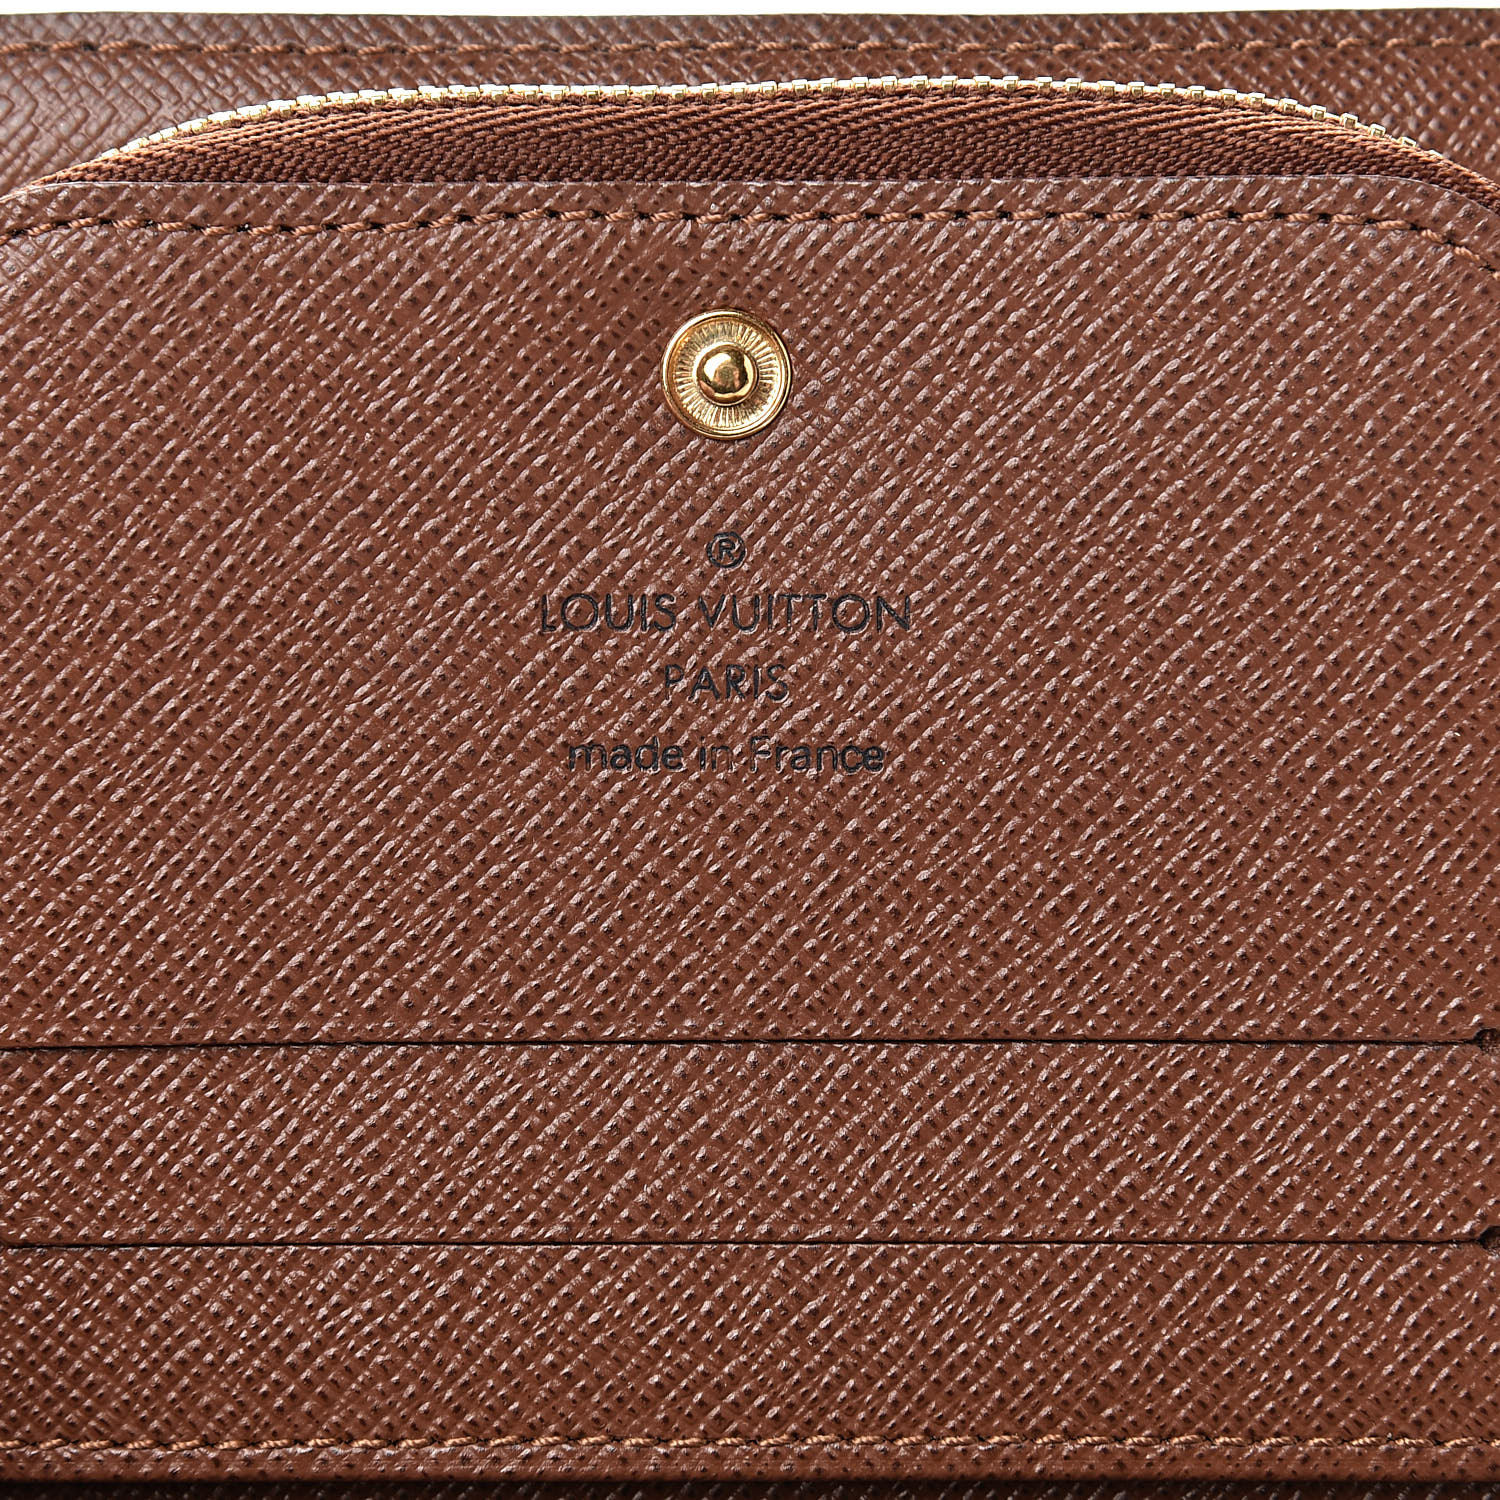 Authentic Louis Vuitton Wallet Long Portefeiulle Sarah Bifold Brown  Monogram Vin